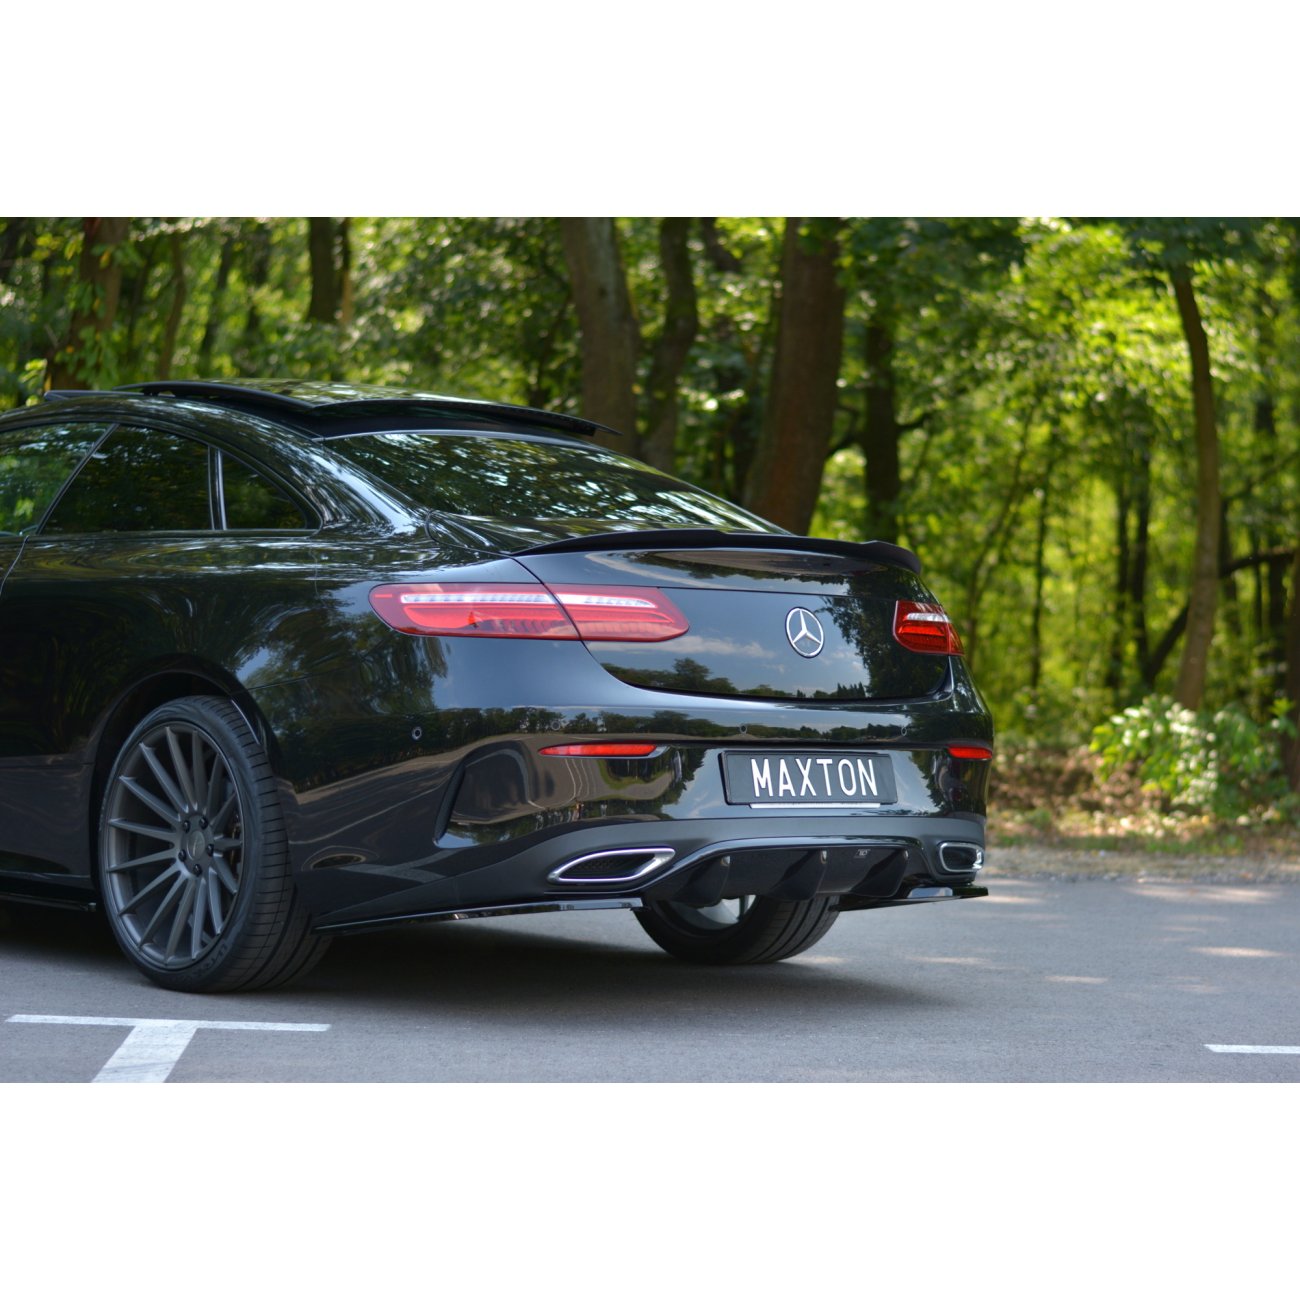 Extra(s) für die Mercedes AMG E-Klasse : Tuningzubehör für den